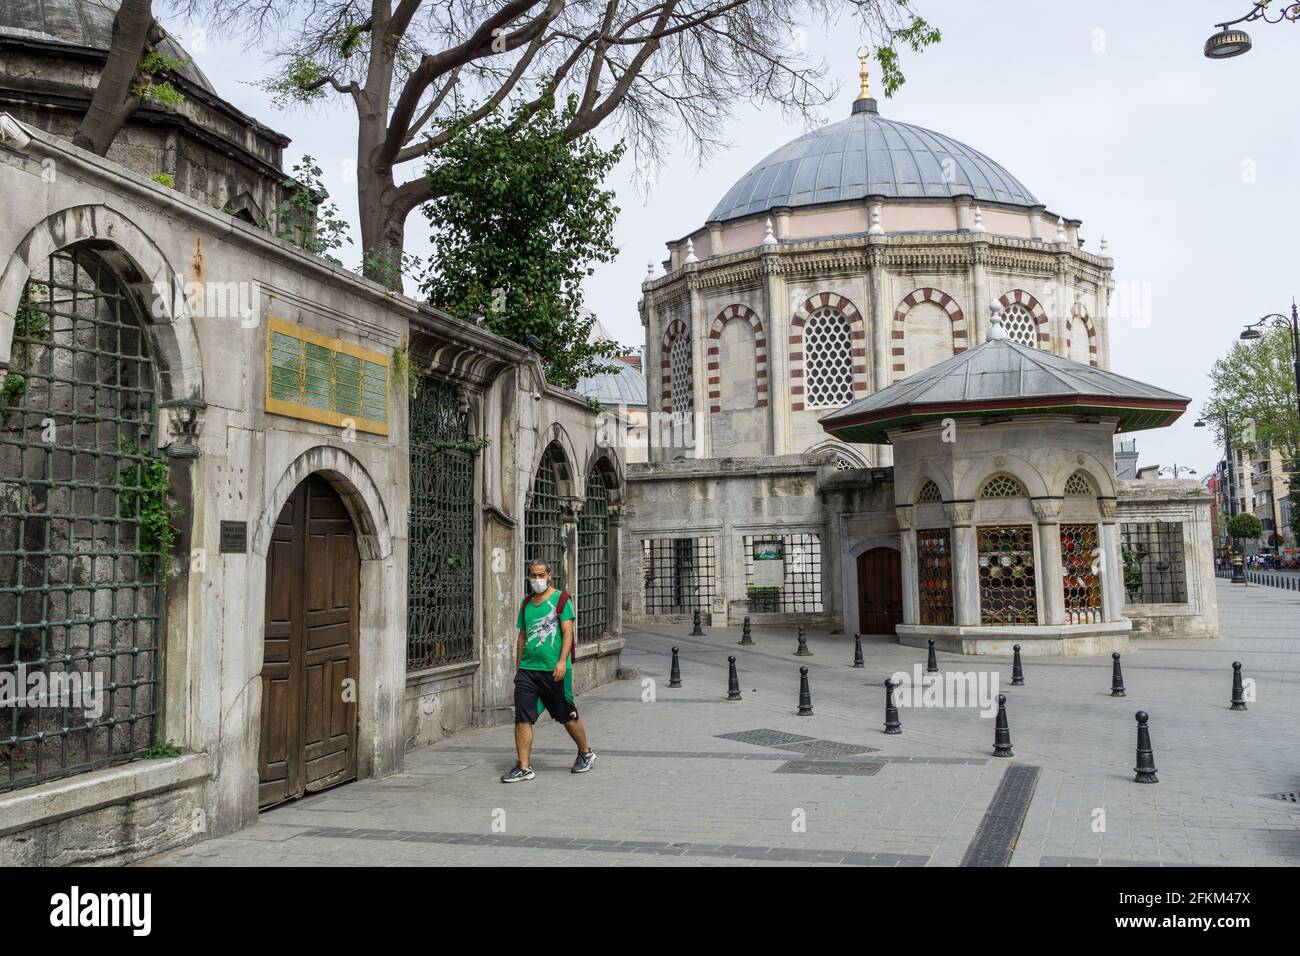 Les touristes ont apprécié le temps chaud près du quartier historique de Sultanahmet le 3ème jour du couvre-feu en raison de l'épidémie de coronavirus à Fatih, Istanbul. Banque D'Images